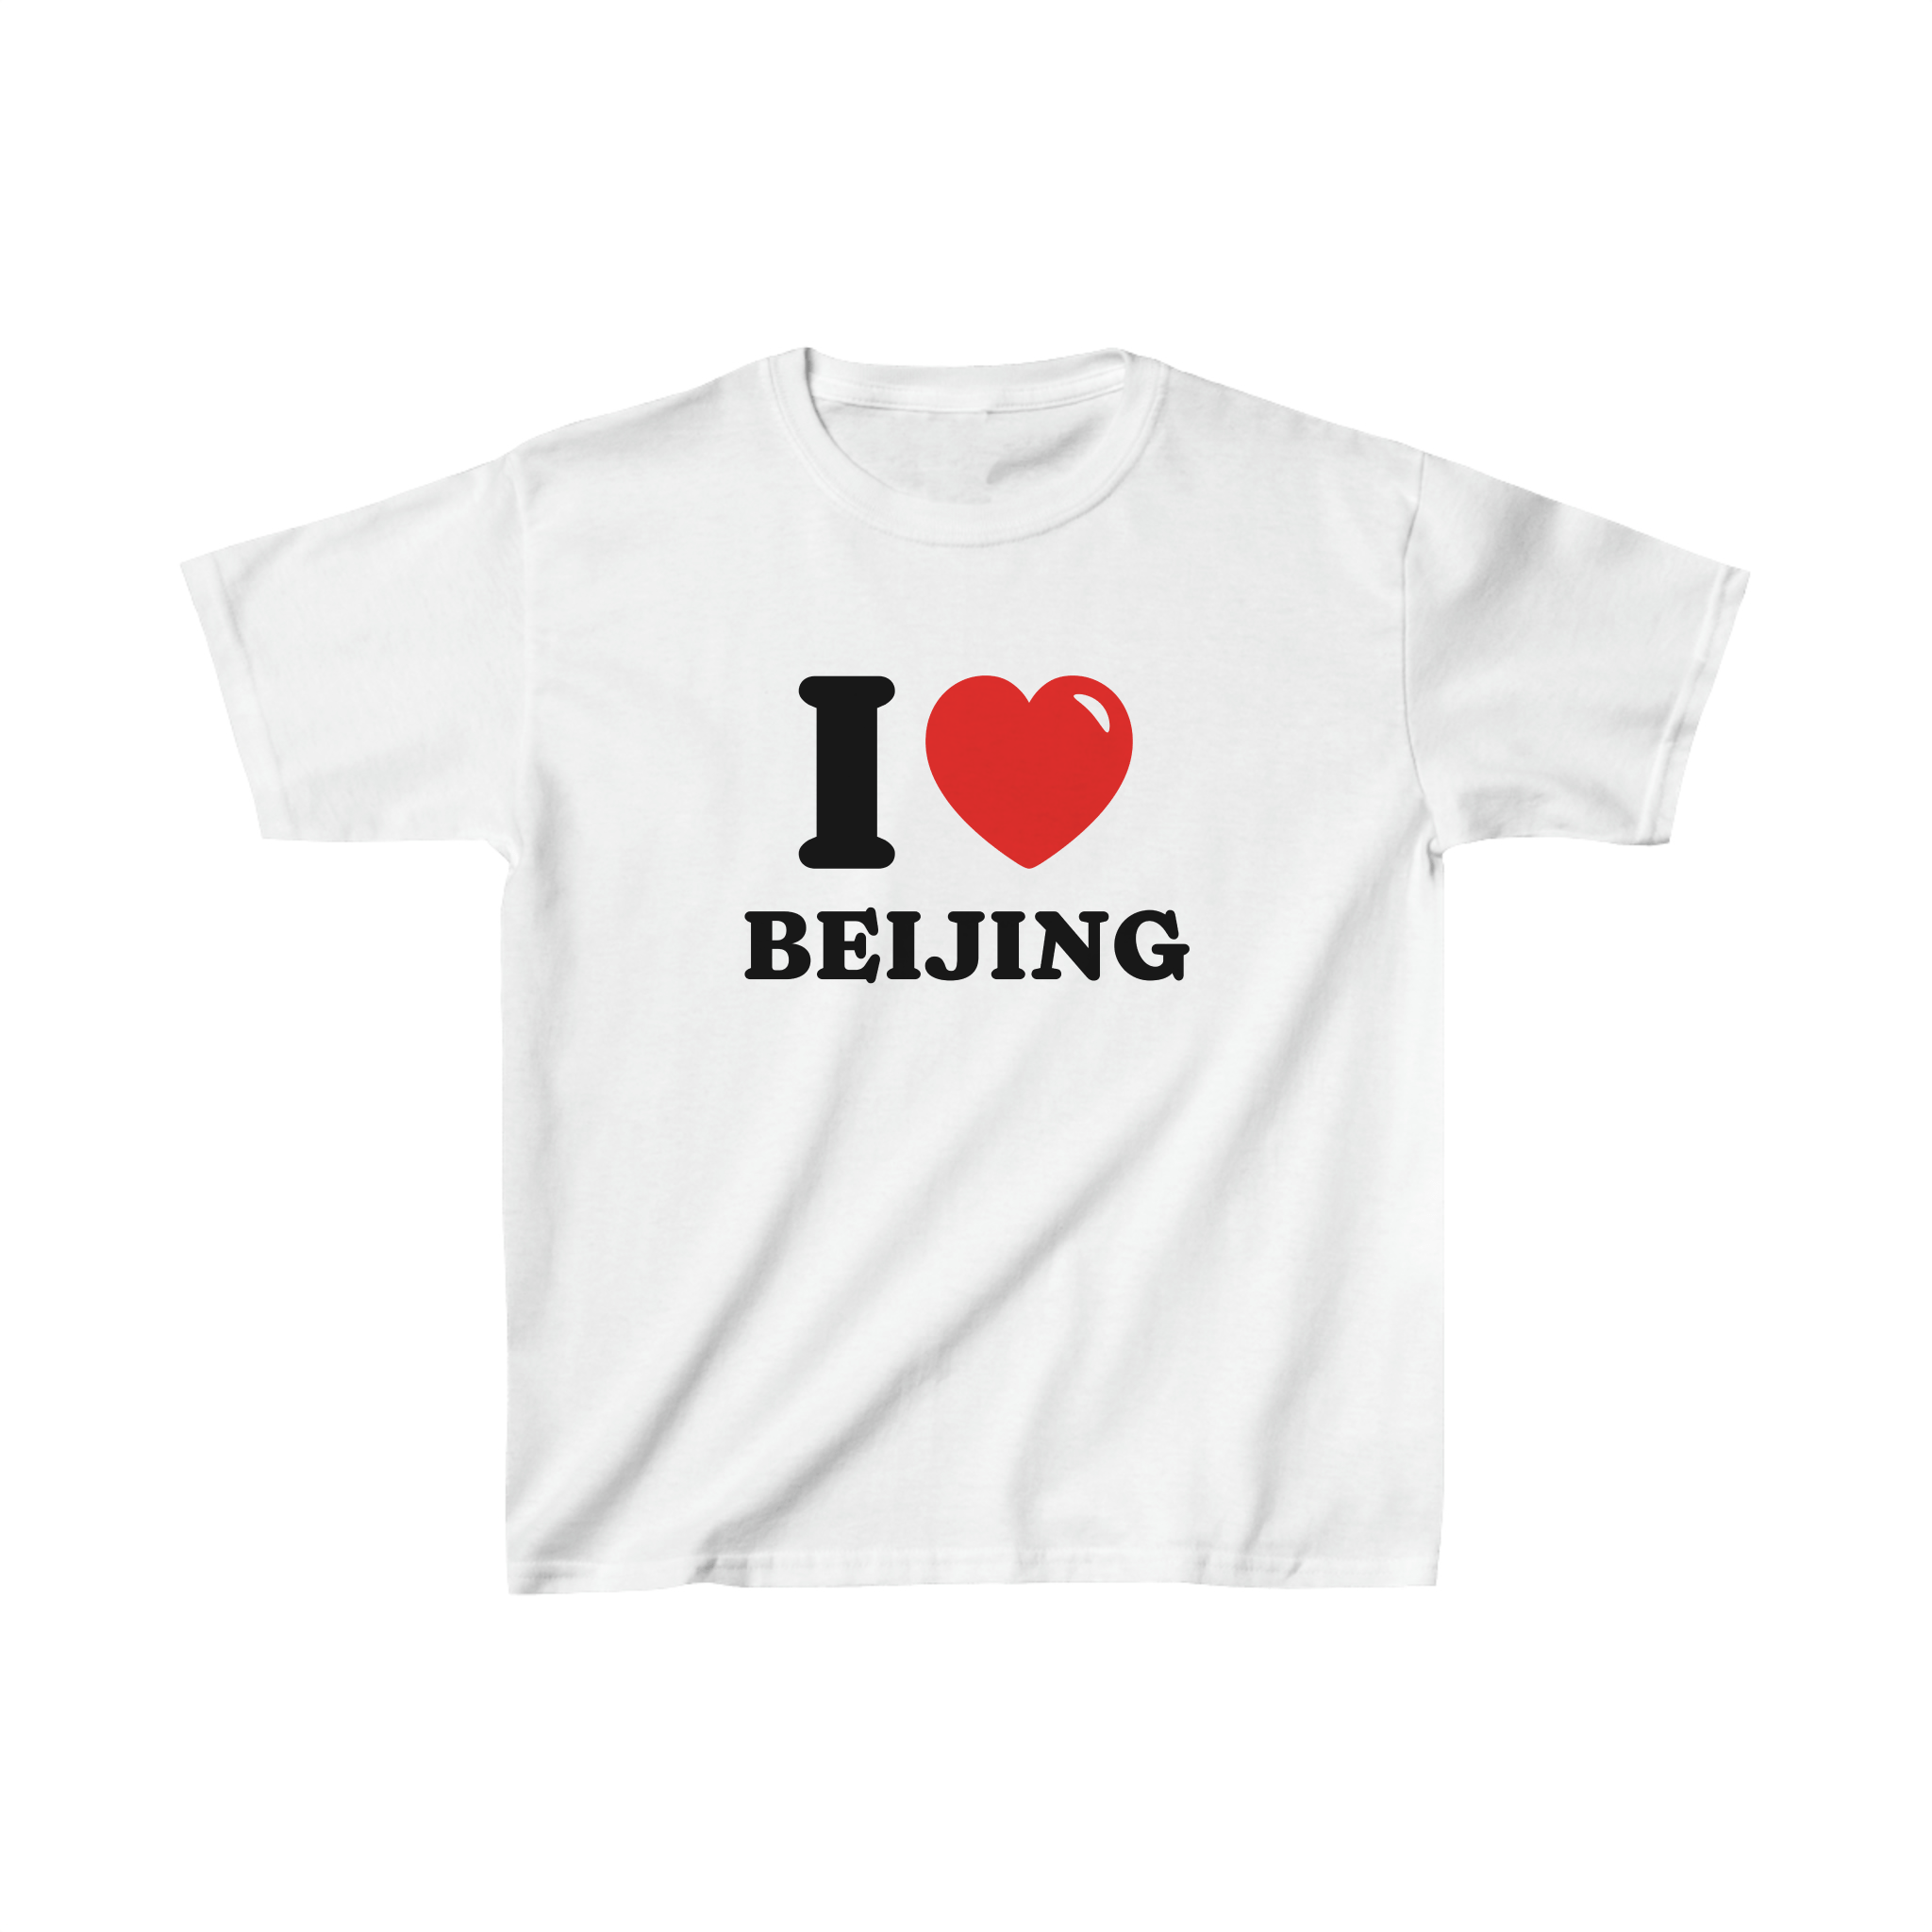 'I love Beijing' baby tee - In Print We Trust